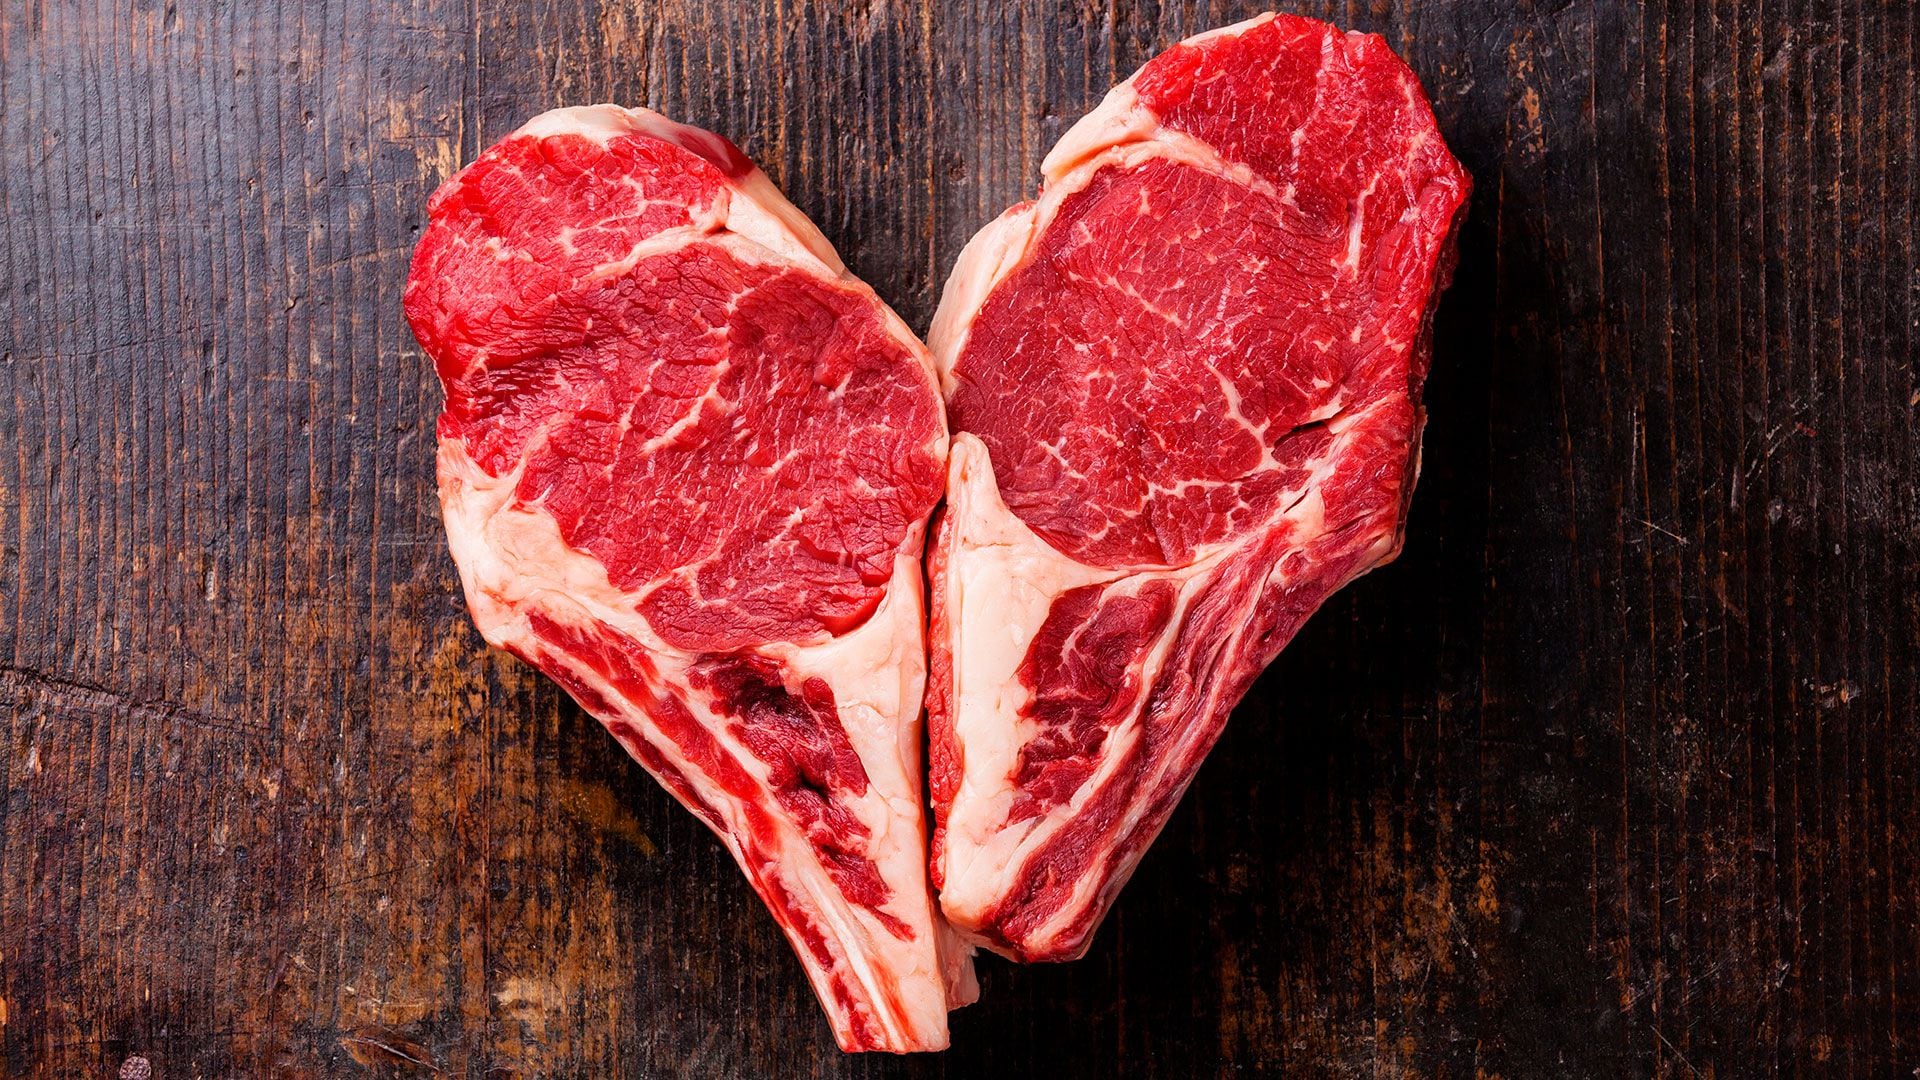 La carne de res, cerdo o cordero puede alterar las bacterias intestinales y desencadenar la inflamación